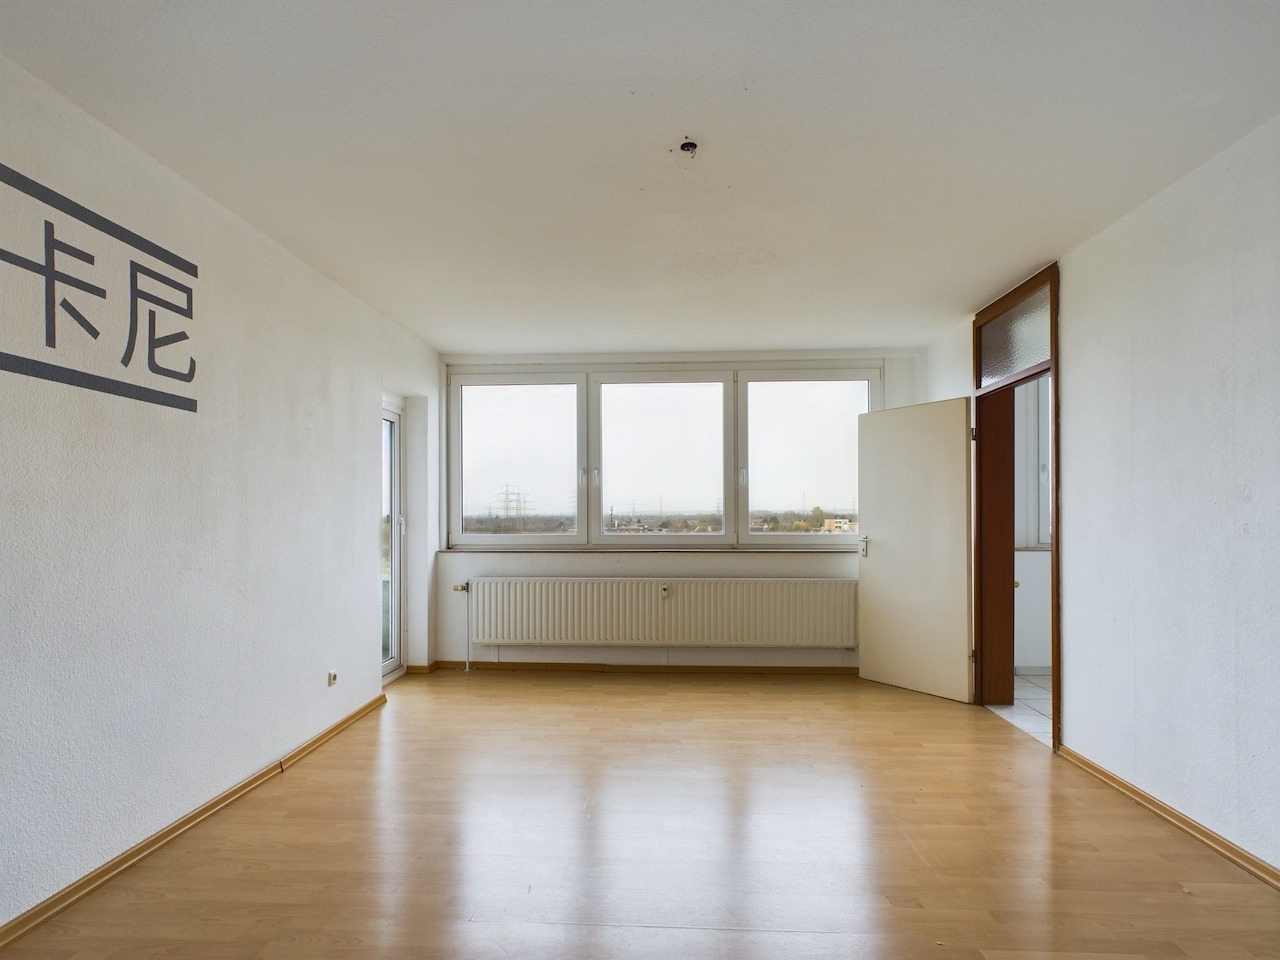 Wohnung mit Ausblick – 2-Zimmerwohnung mit Balkon in ruhiger Wohnanlage